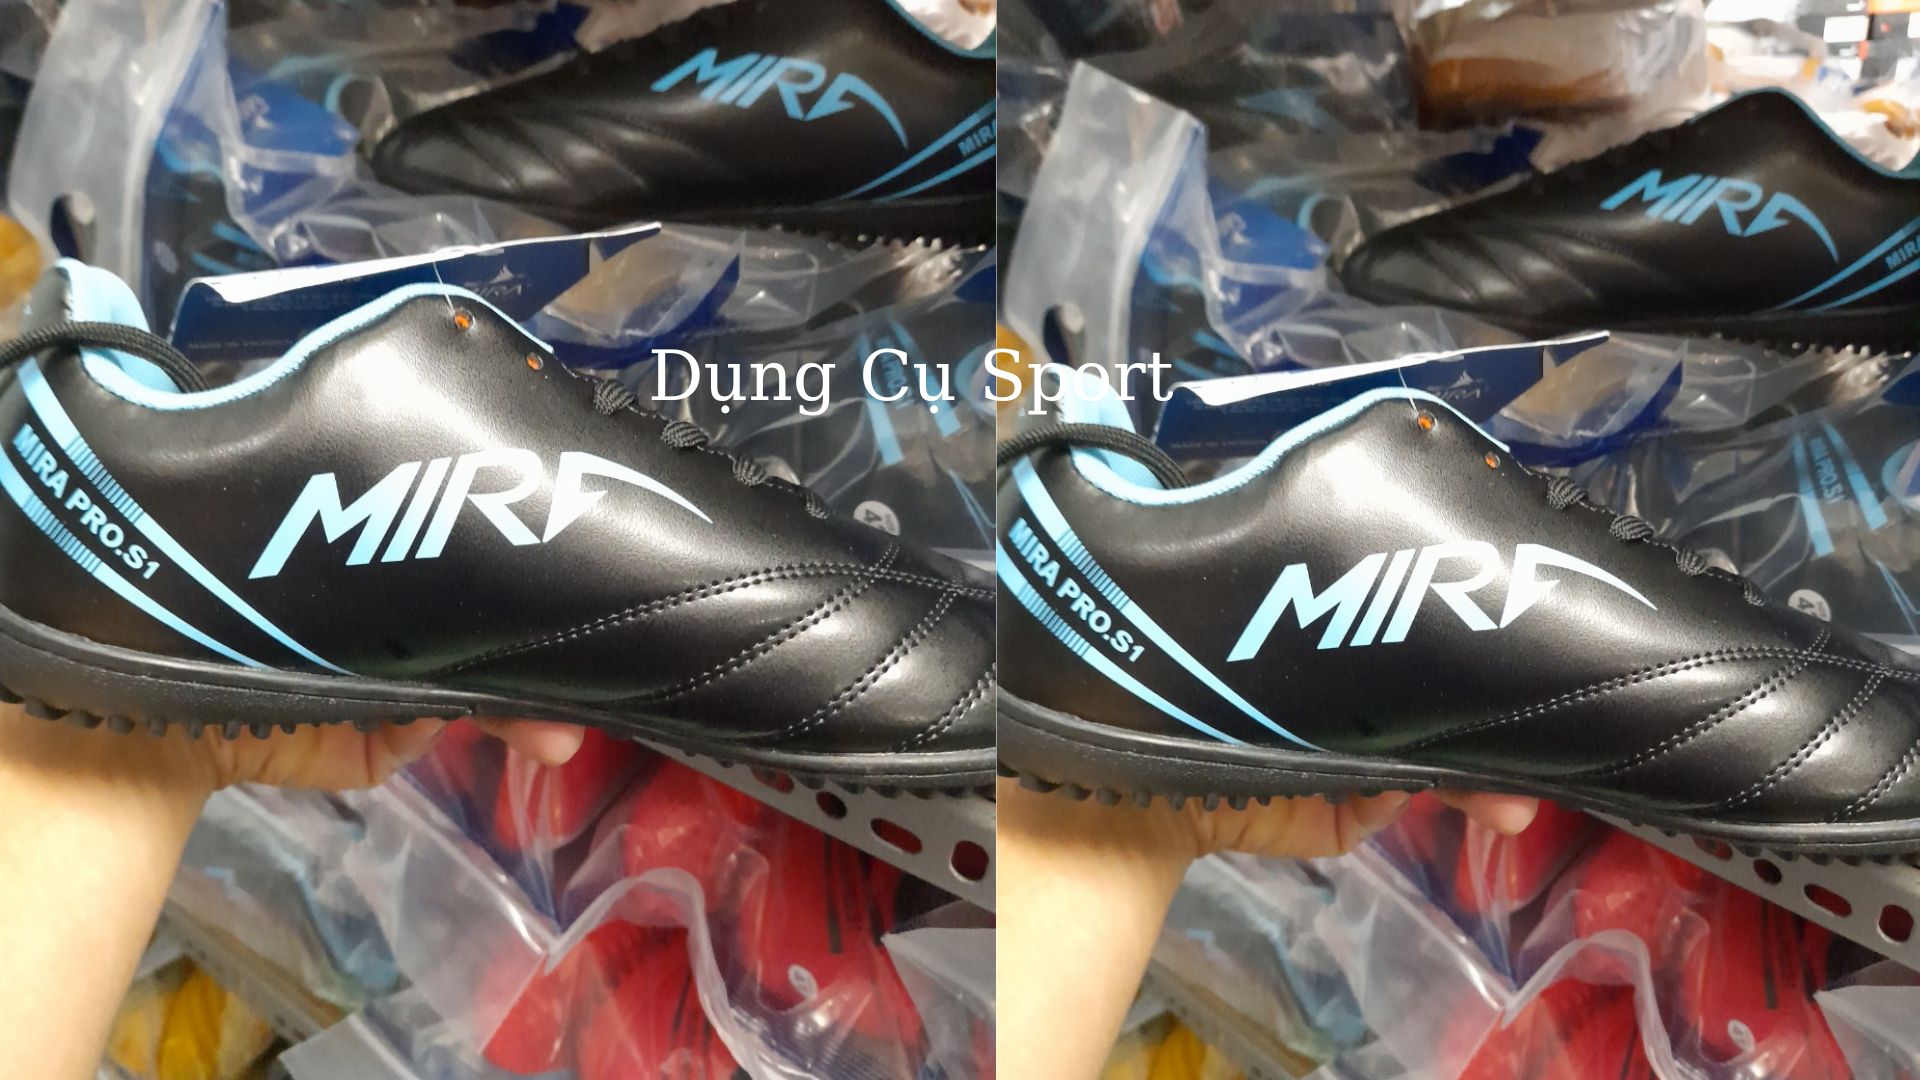 Giày thể thao, Giày bóng đá đế đinh Mira Pro-S1 TF nổi bật trên sân cỏ nhân tạo - Dungcusport